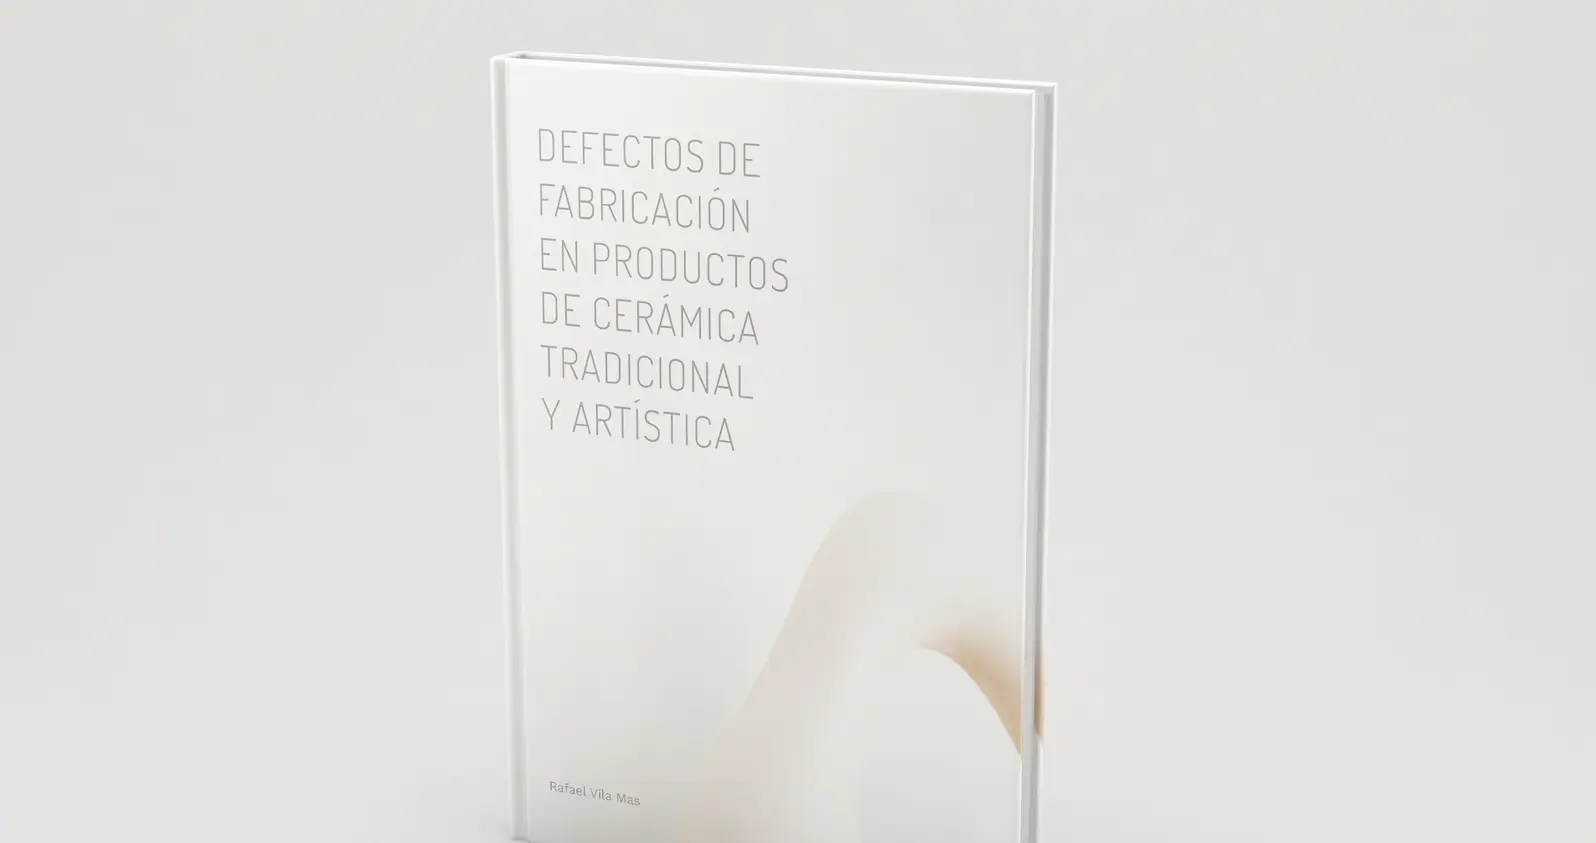 Disponible en Amazon el libro “Defectos de fabricación cerámica tradicional”